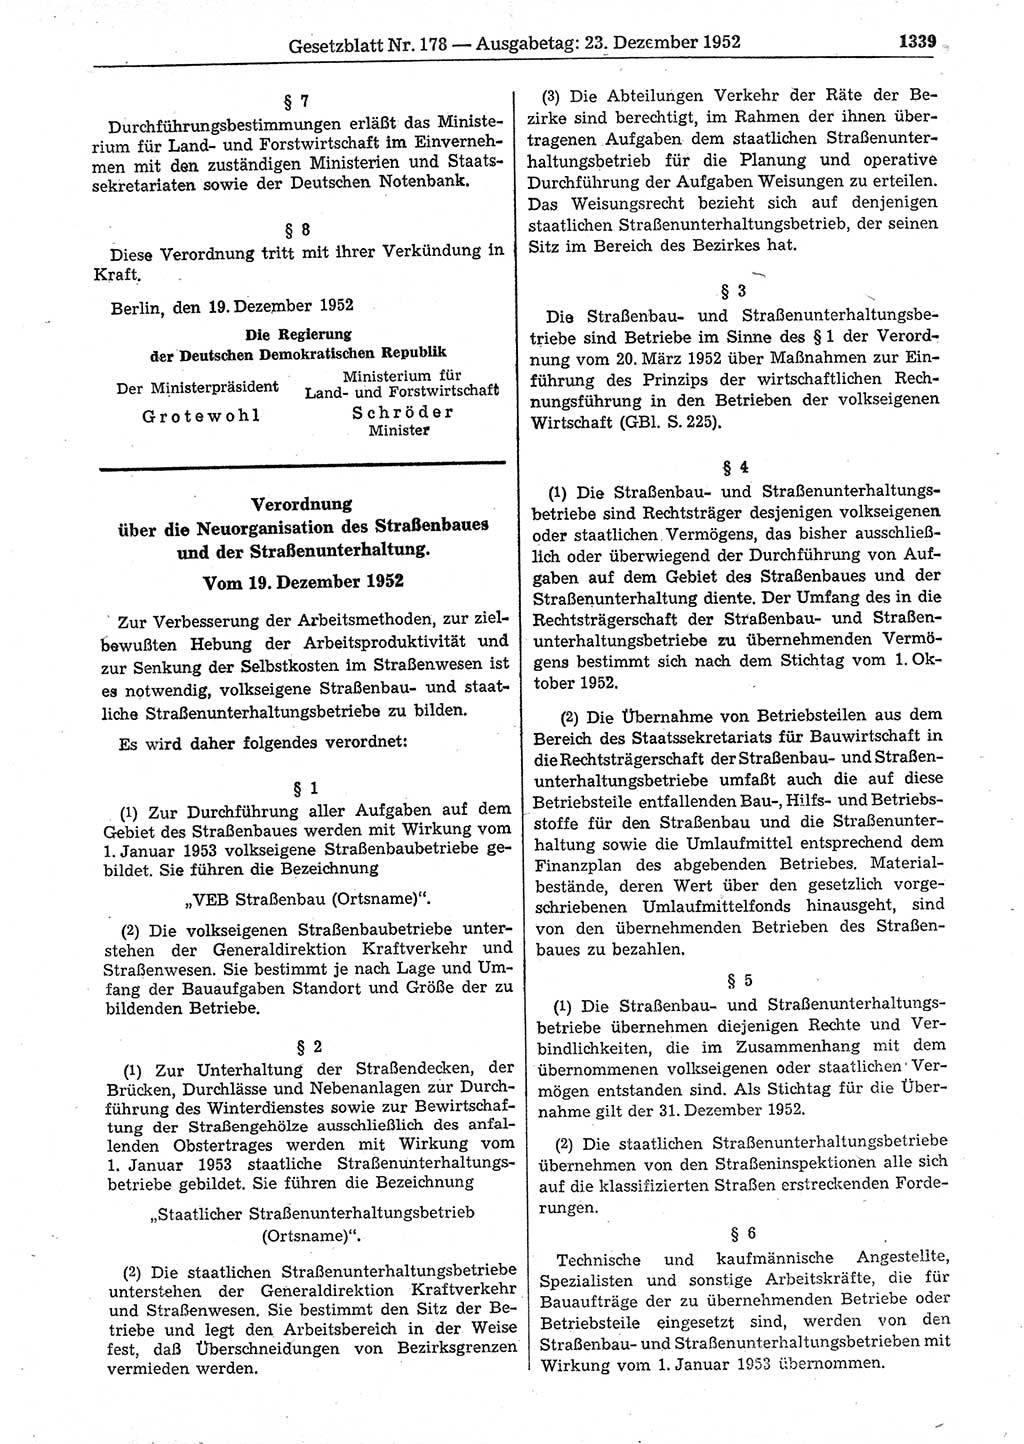 Gesetzblatt (GBl.) der Deutschen Demokratischen Republik (DDR) 1952, Seite 1339 (GBl. DDR 1952, S. 1339)